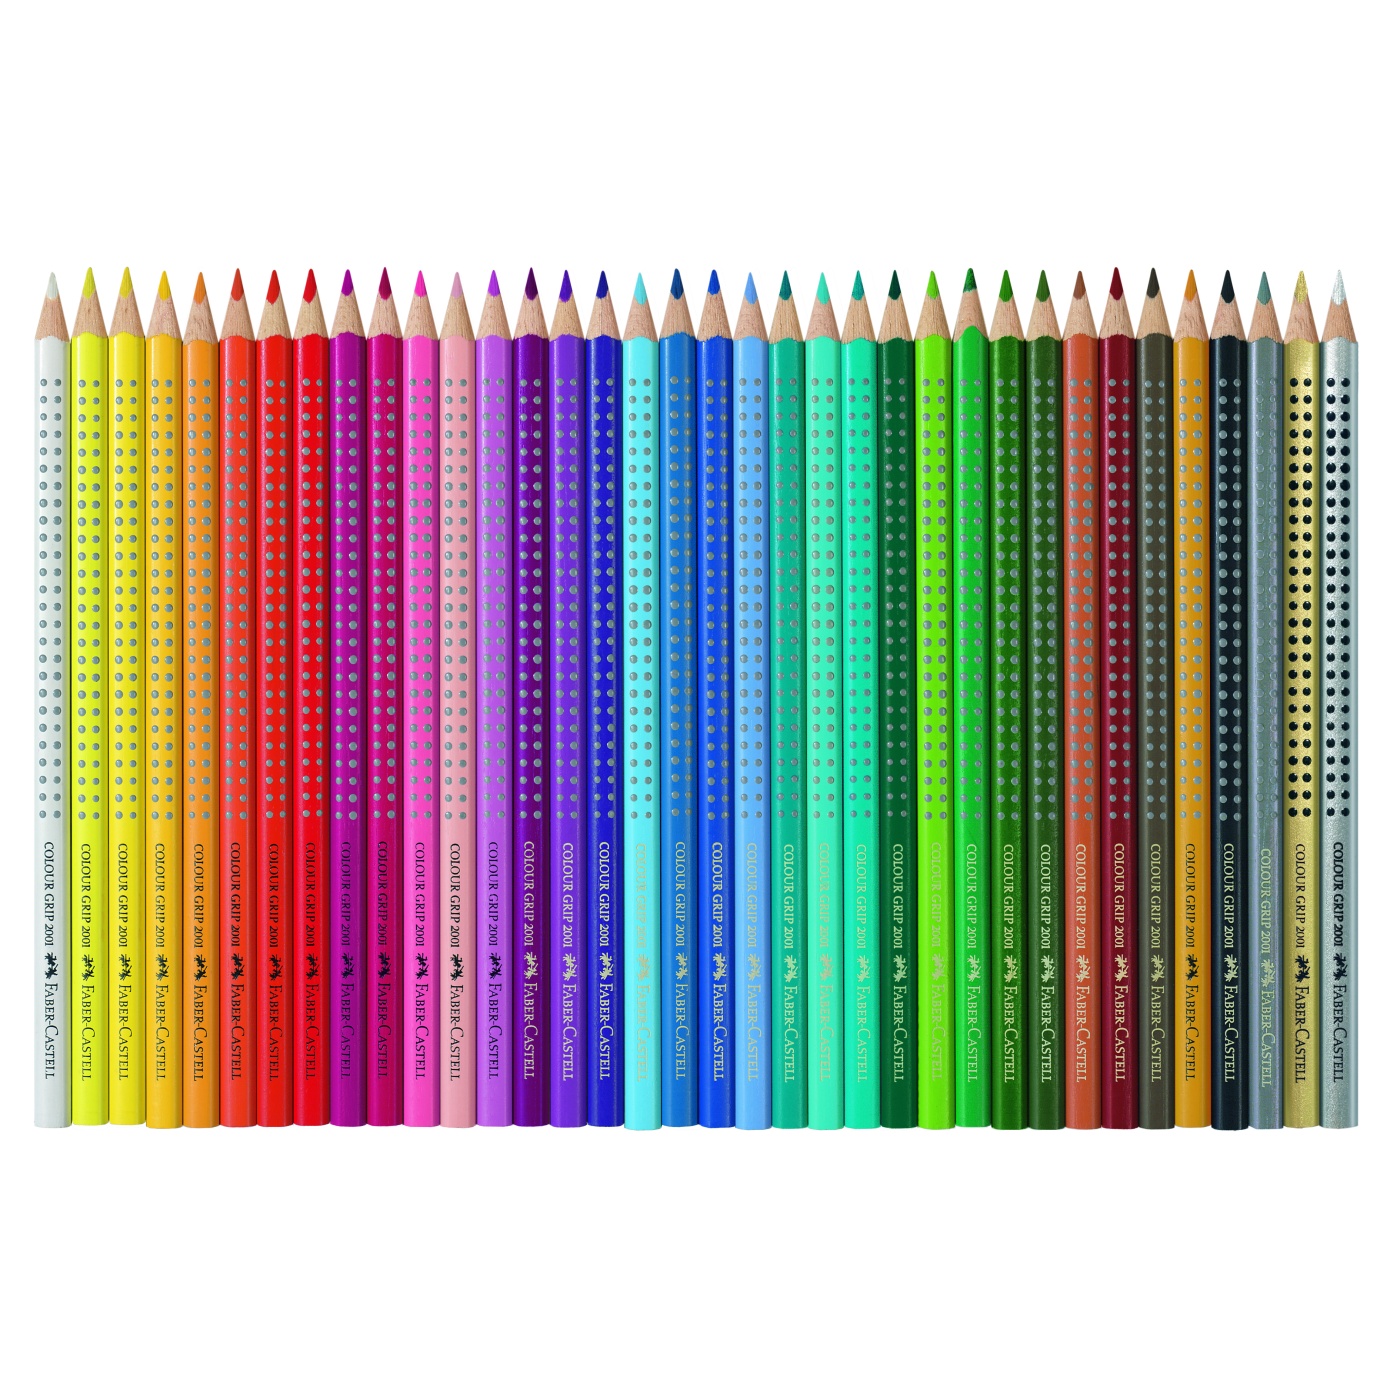 Crayons de couleur Colour Grip Lot de 36 (3 ans et +) dans le groupe Kids / Crayons pours les enfants / 3 ans + chez Pen Store (101390)